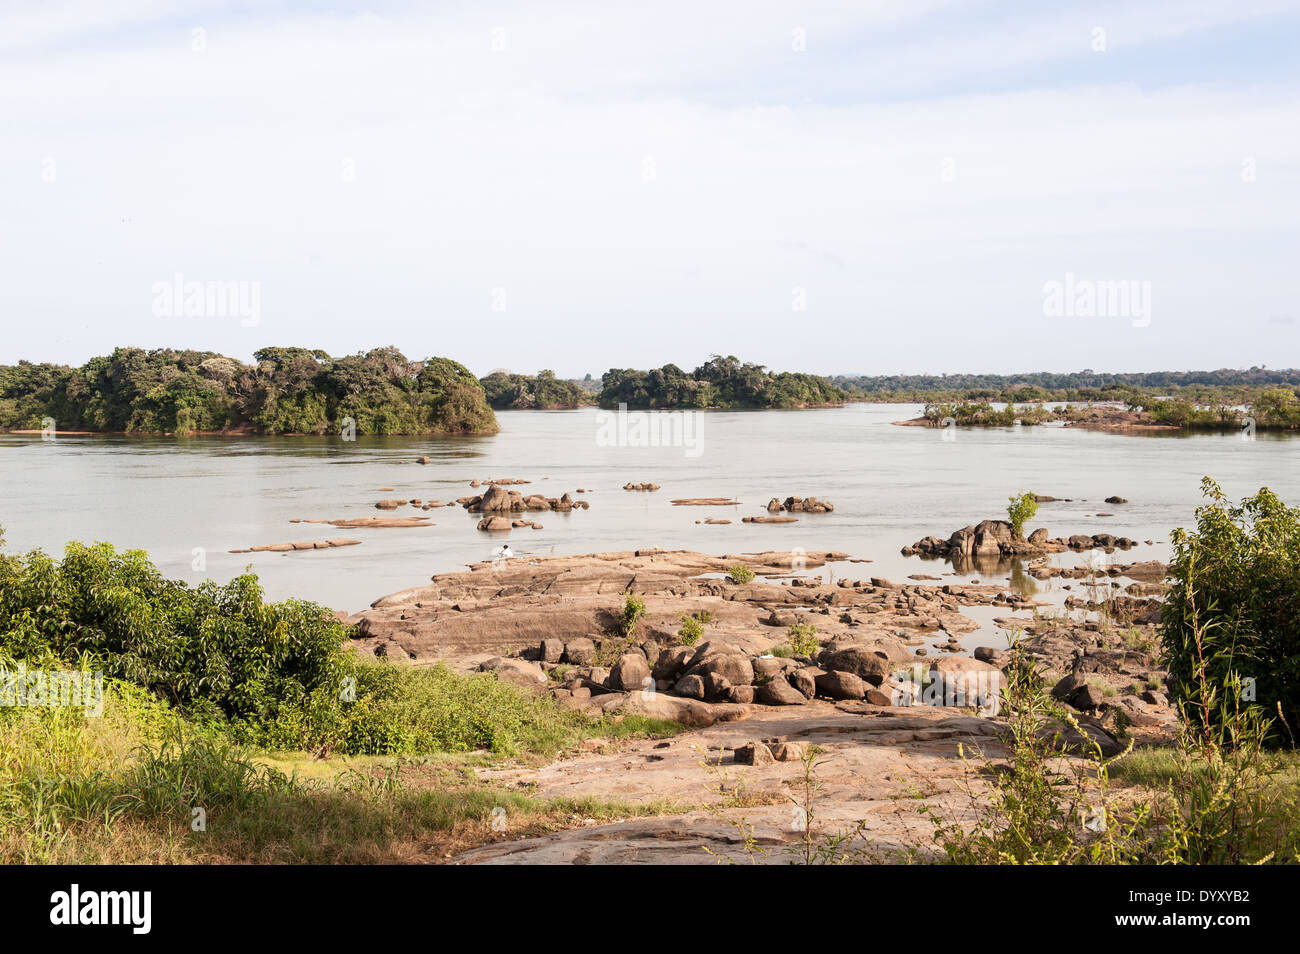 La rivière Xingu, l'État de Para au Brésil. La Volta Grande, l'Aldeia da Terra Wangã Volta Grande - Maia, Arara groupe ethnique. Faible niveau de la rivière, des roches. Banque D'Images